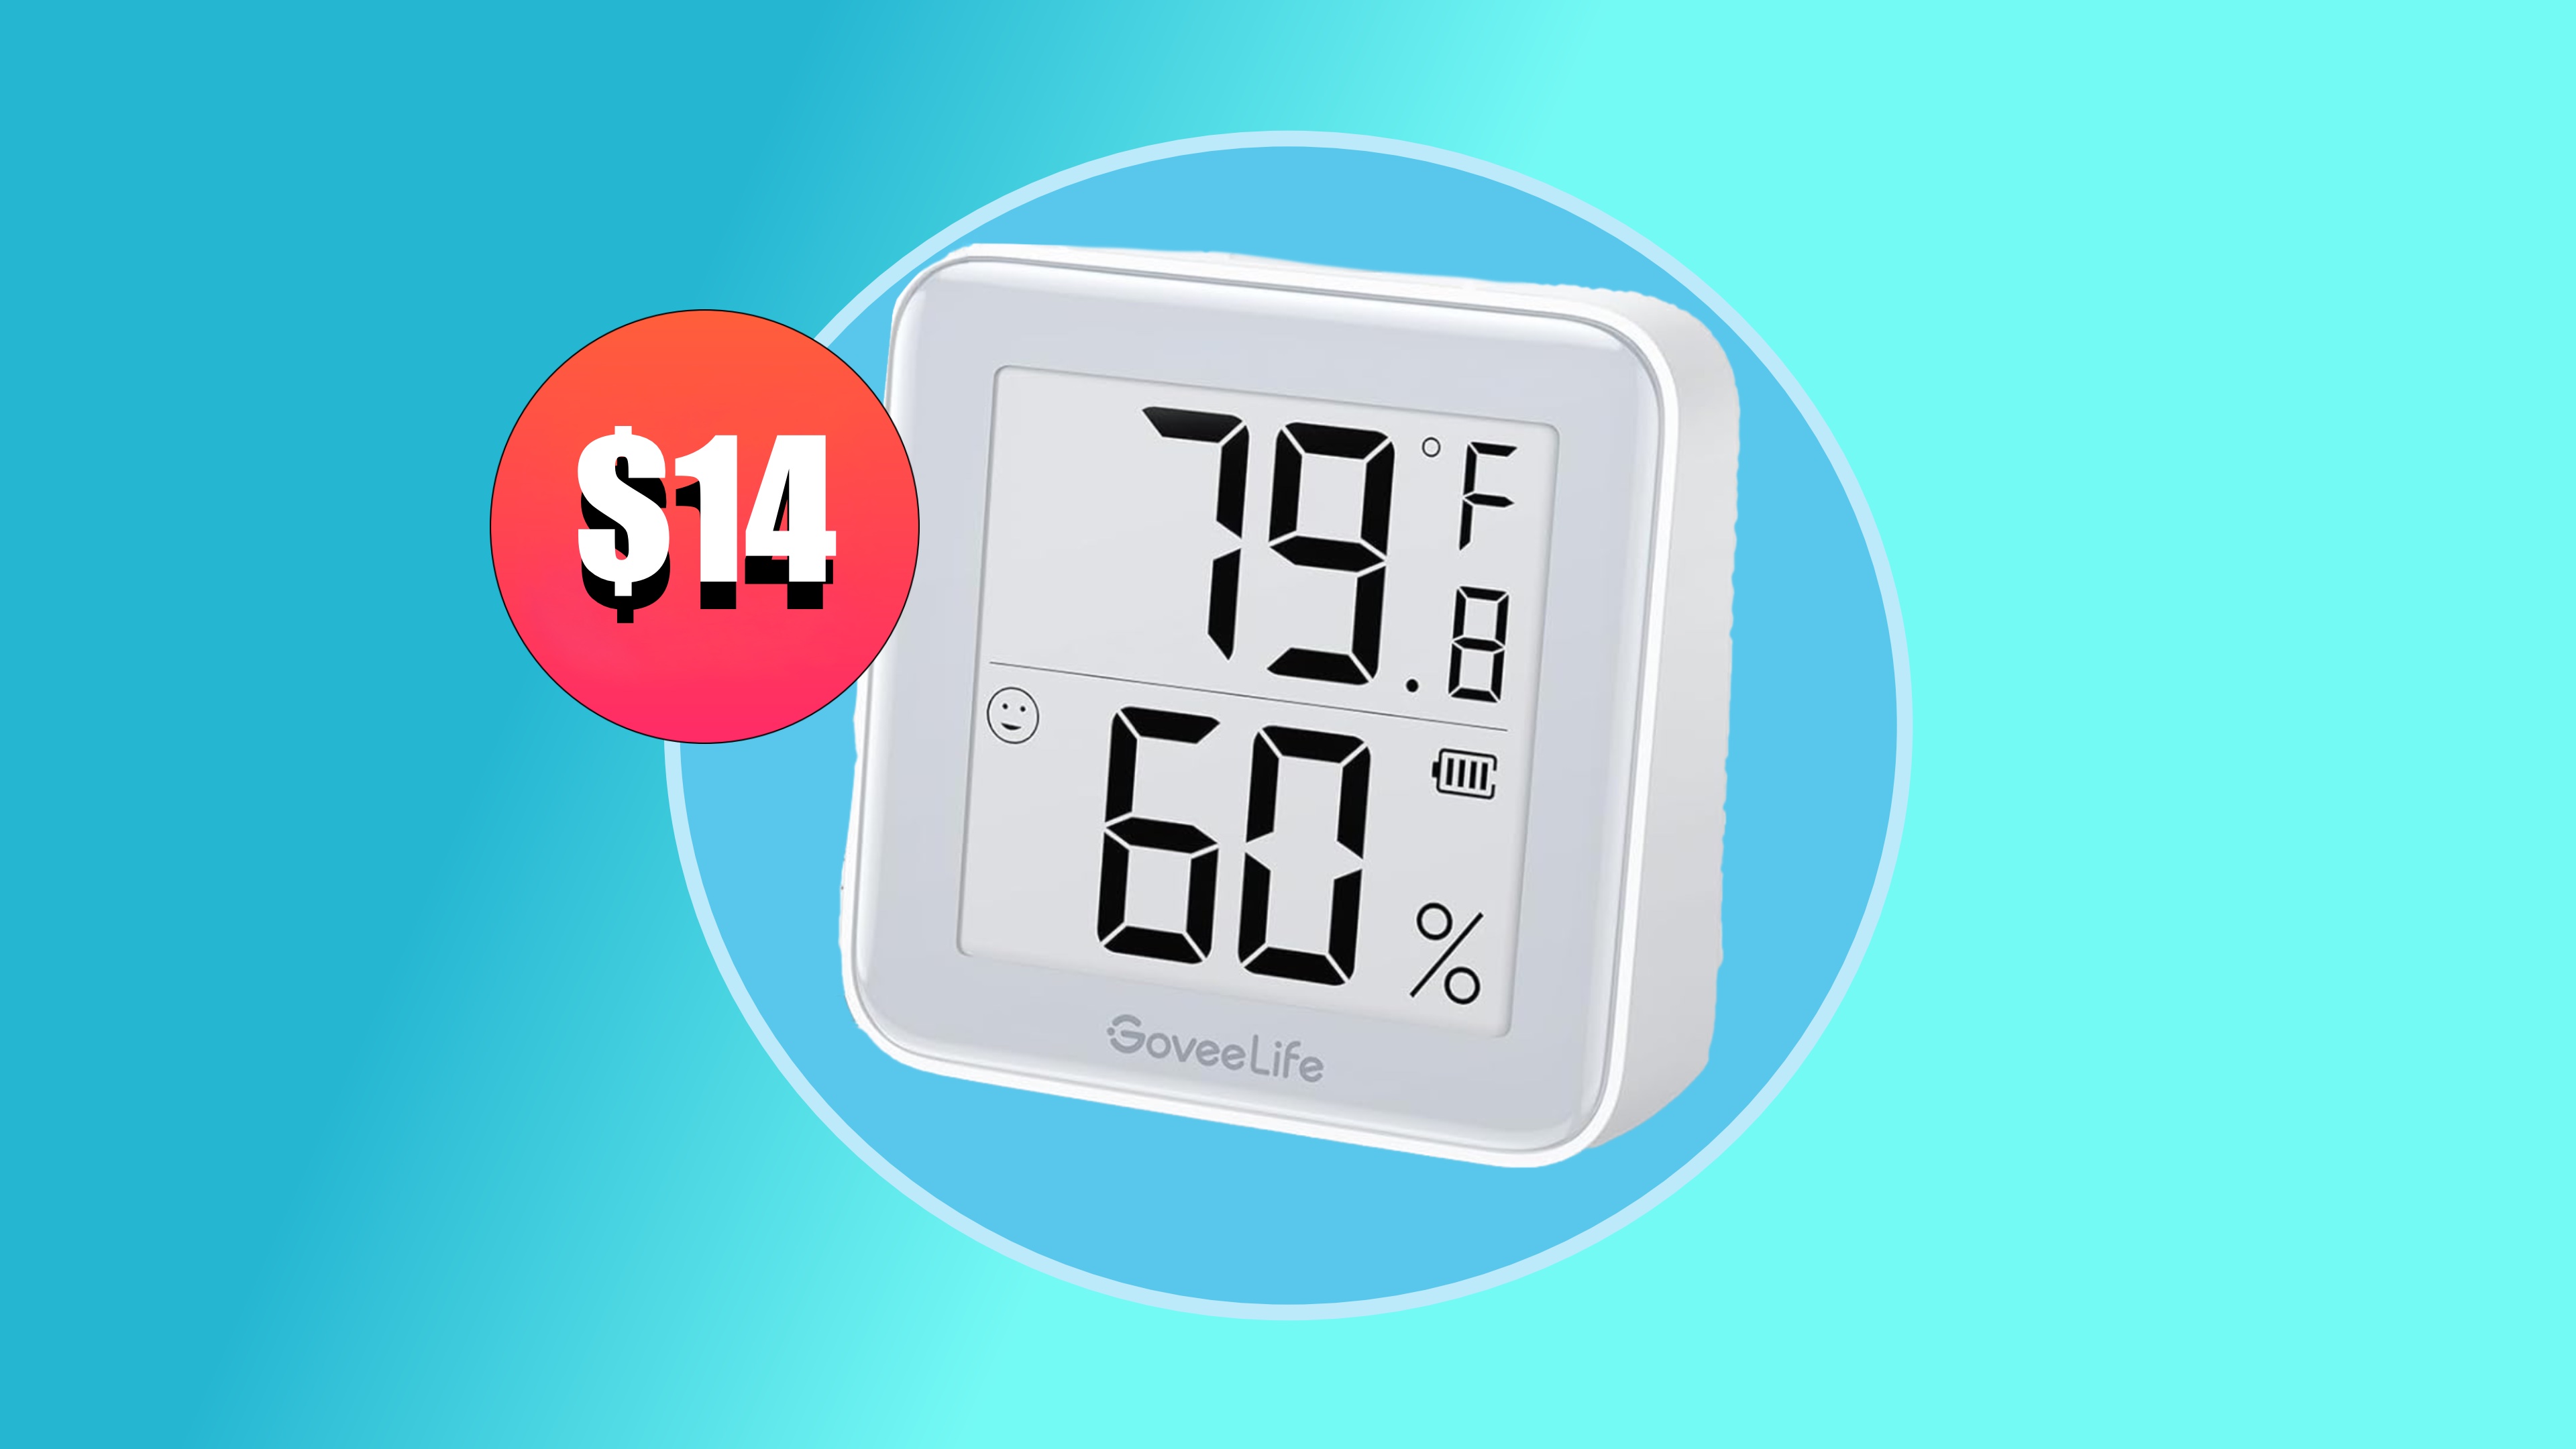 Get two GoveeLife smart indoor temperature sensors for just $14